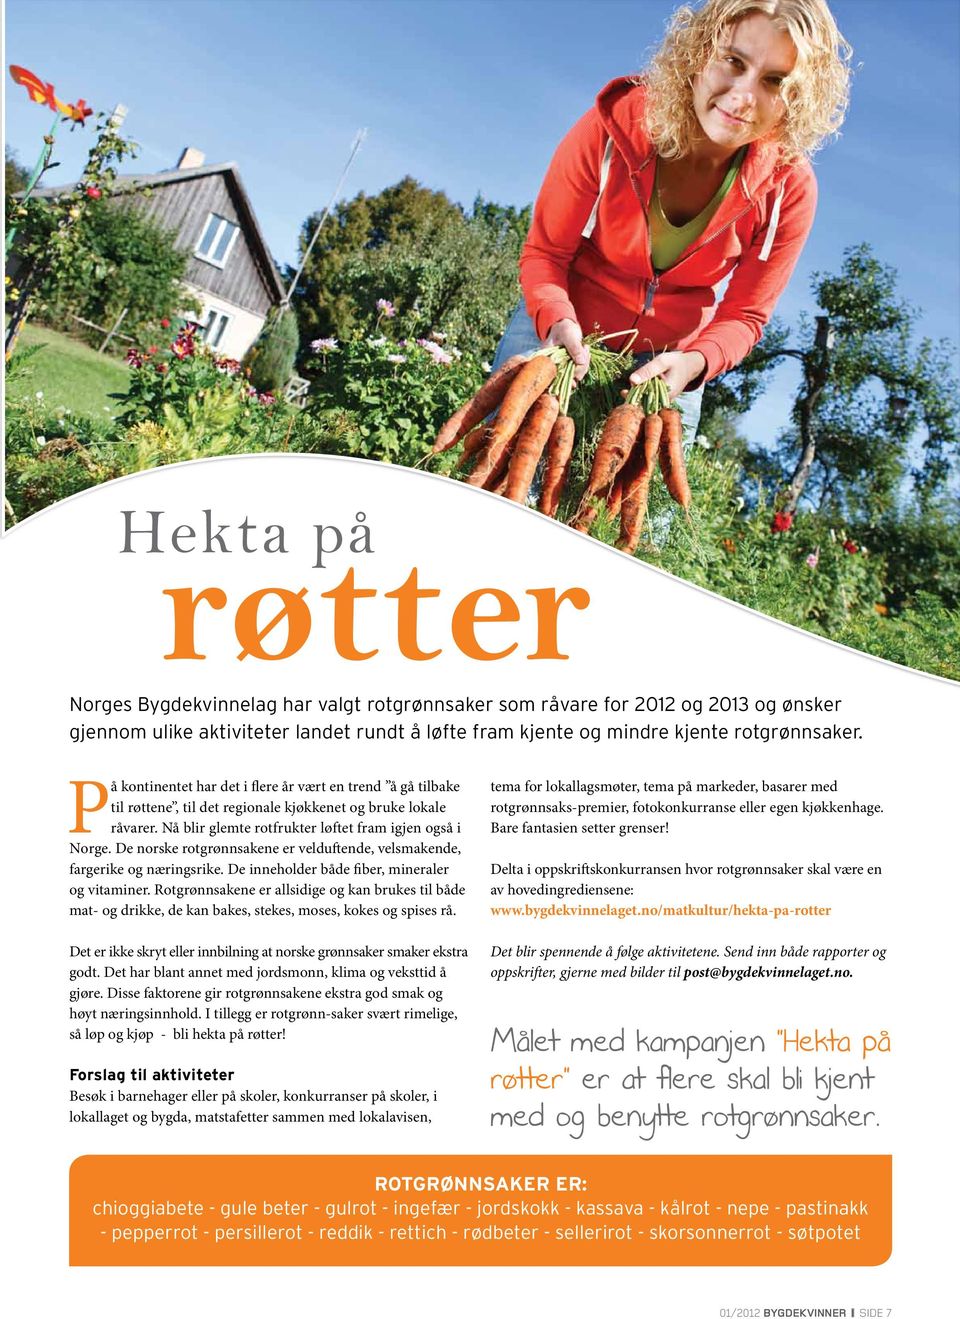 De norske rotgrønnsakene er velduftende, velsmakende, fargerike og næringsrike. De inneholder både fiber, mineraler og vitaminer.